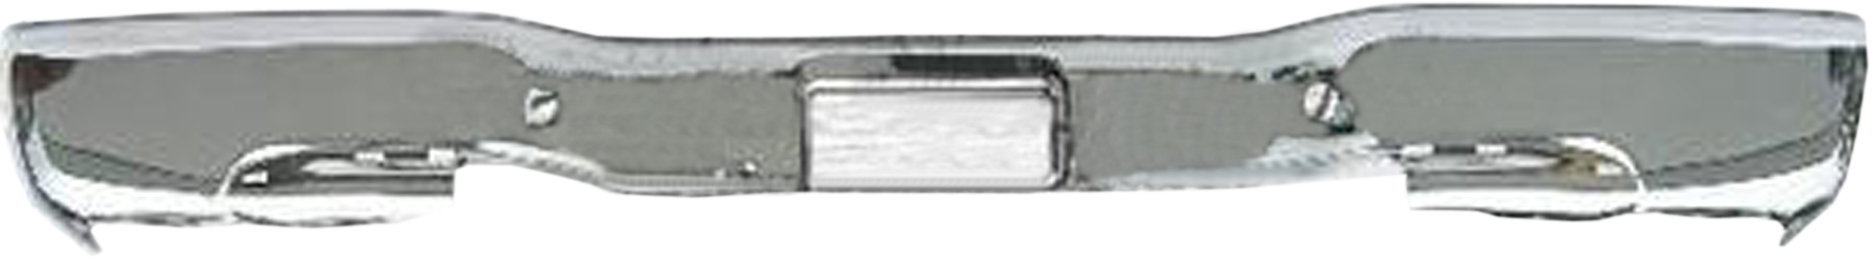 Aftermarket METAL REAR BUMPERS for GMC - SIERRA 3500, SIERRA 3500,01-06,Rear bumper face bar